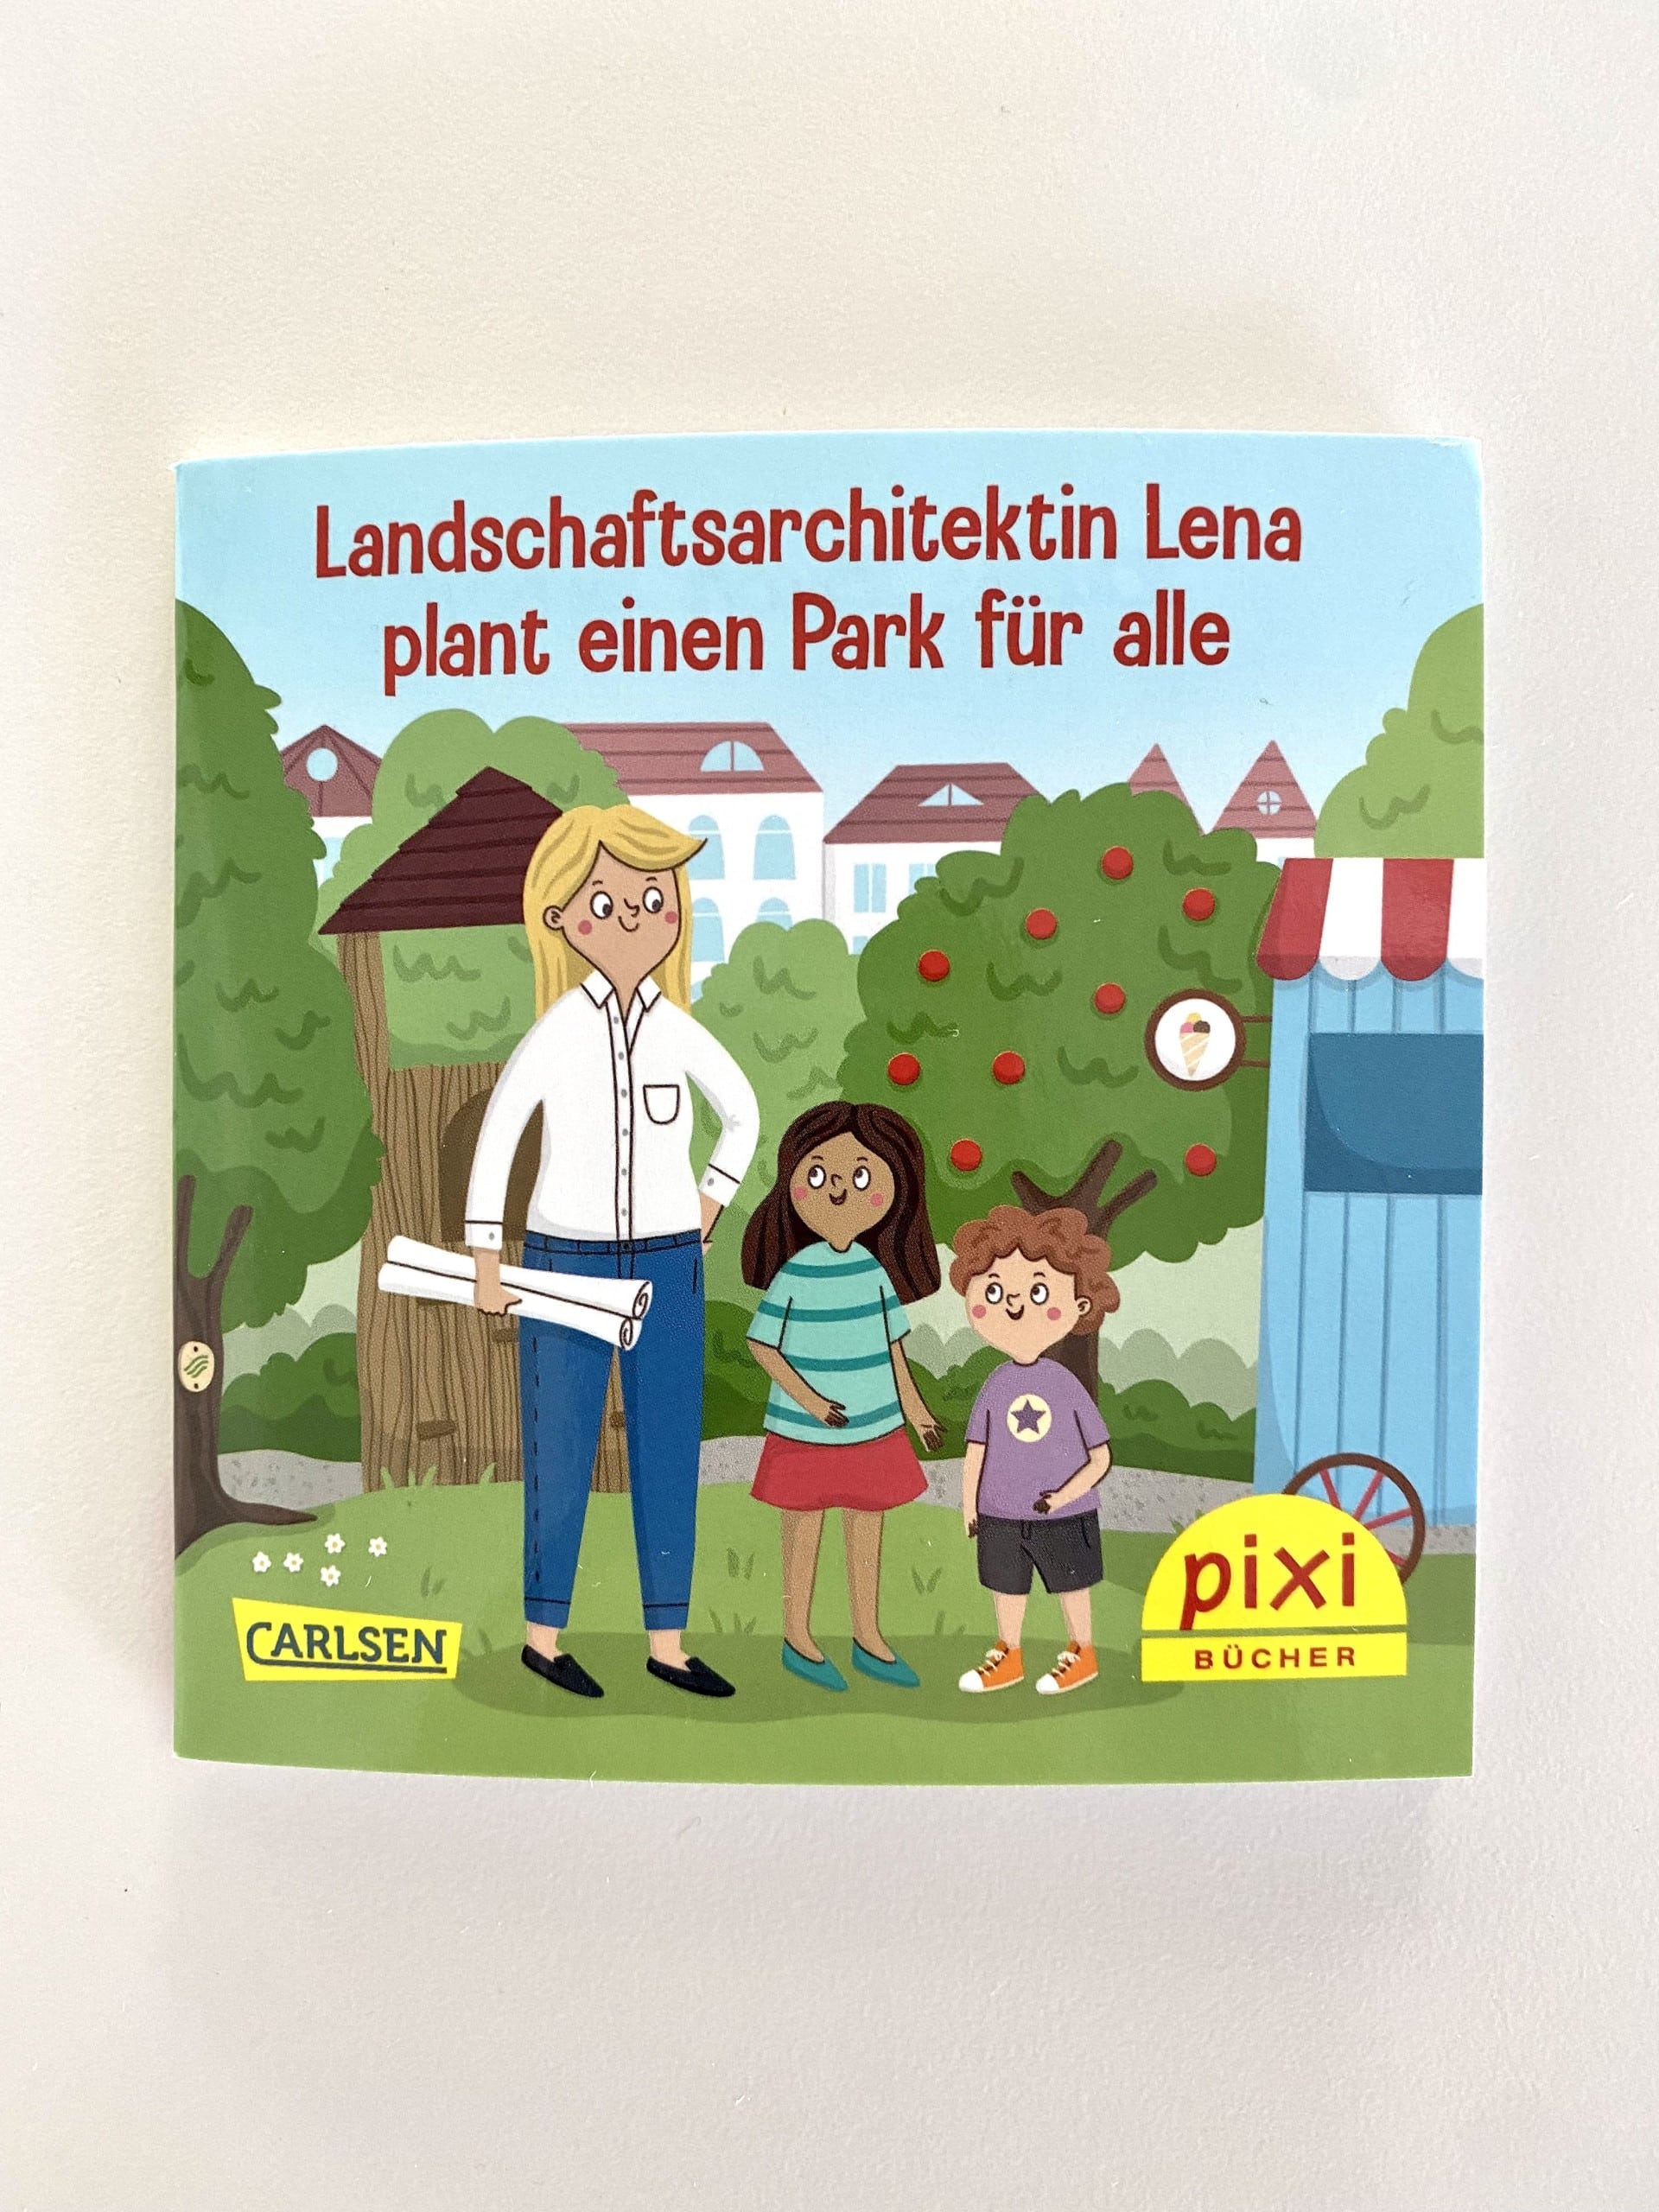 Das Pixi-Buch „Landschaftsarchitektin Lena plant einen Park für alle“ ist erschienen.